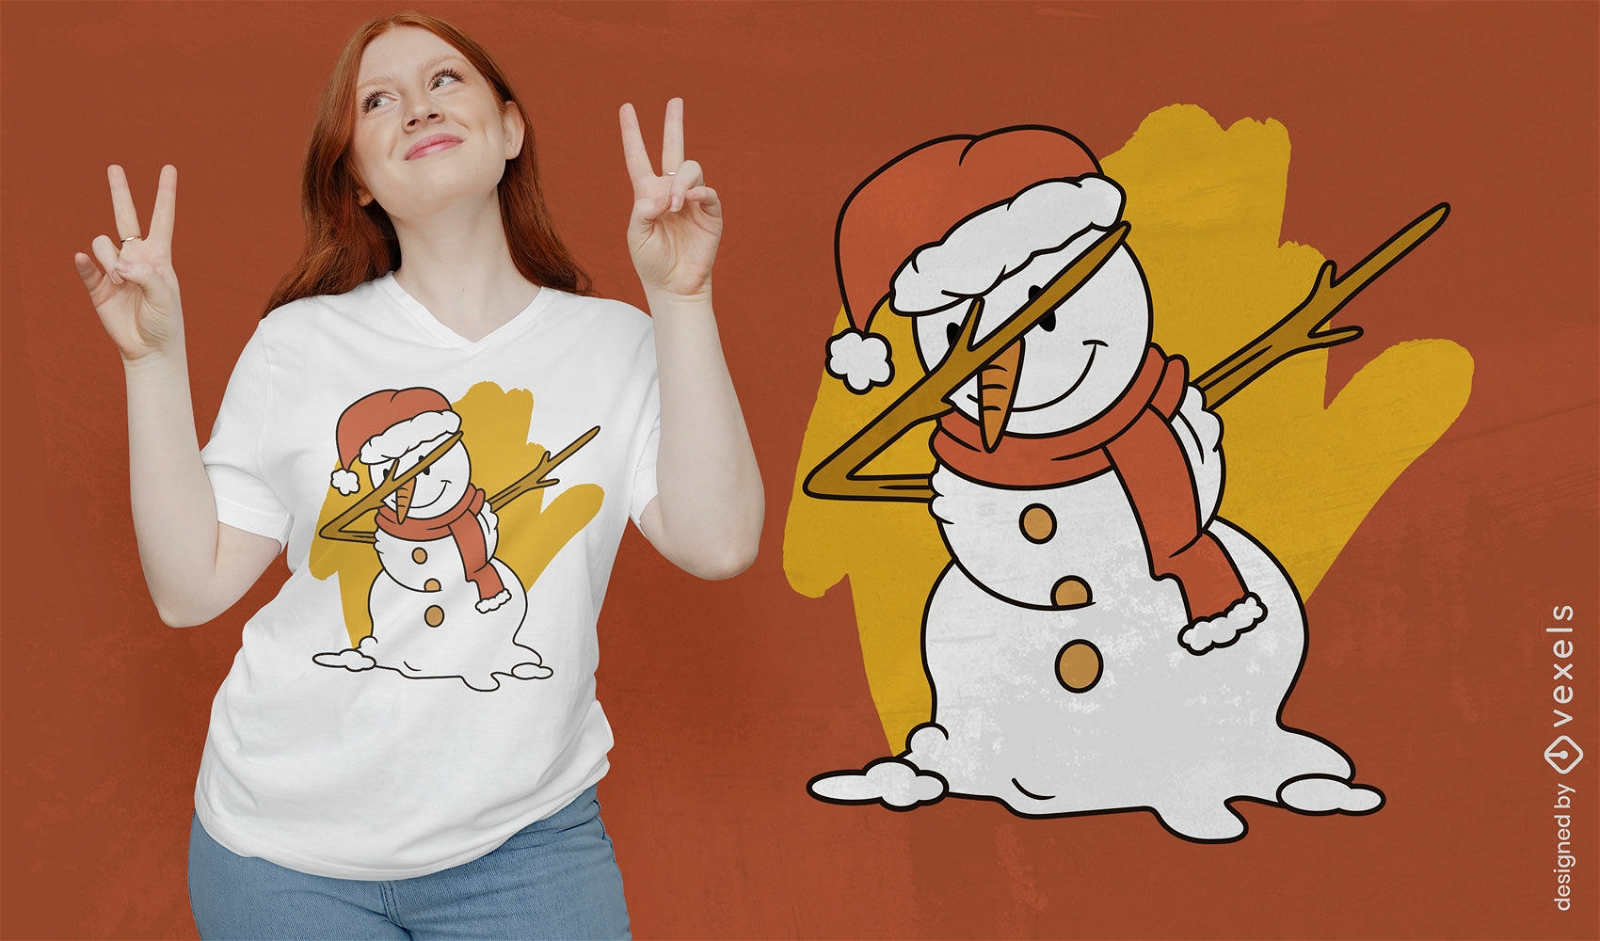 Playful dabbing snowman t-shirt design